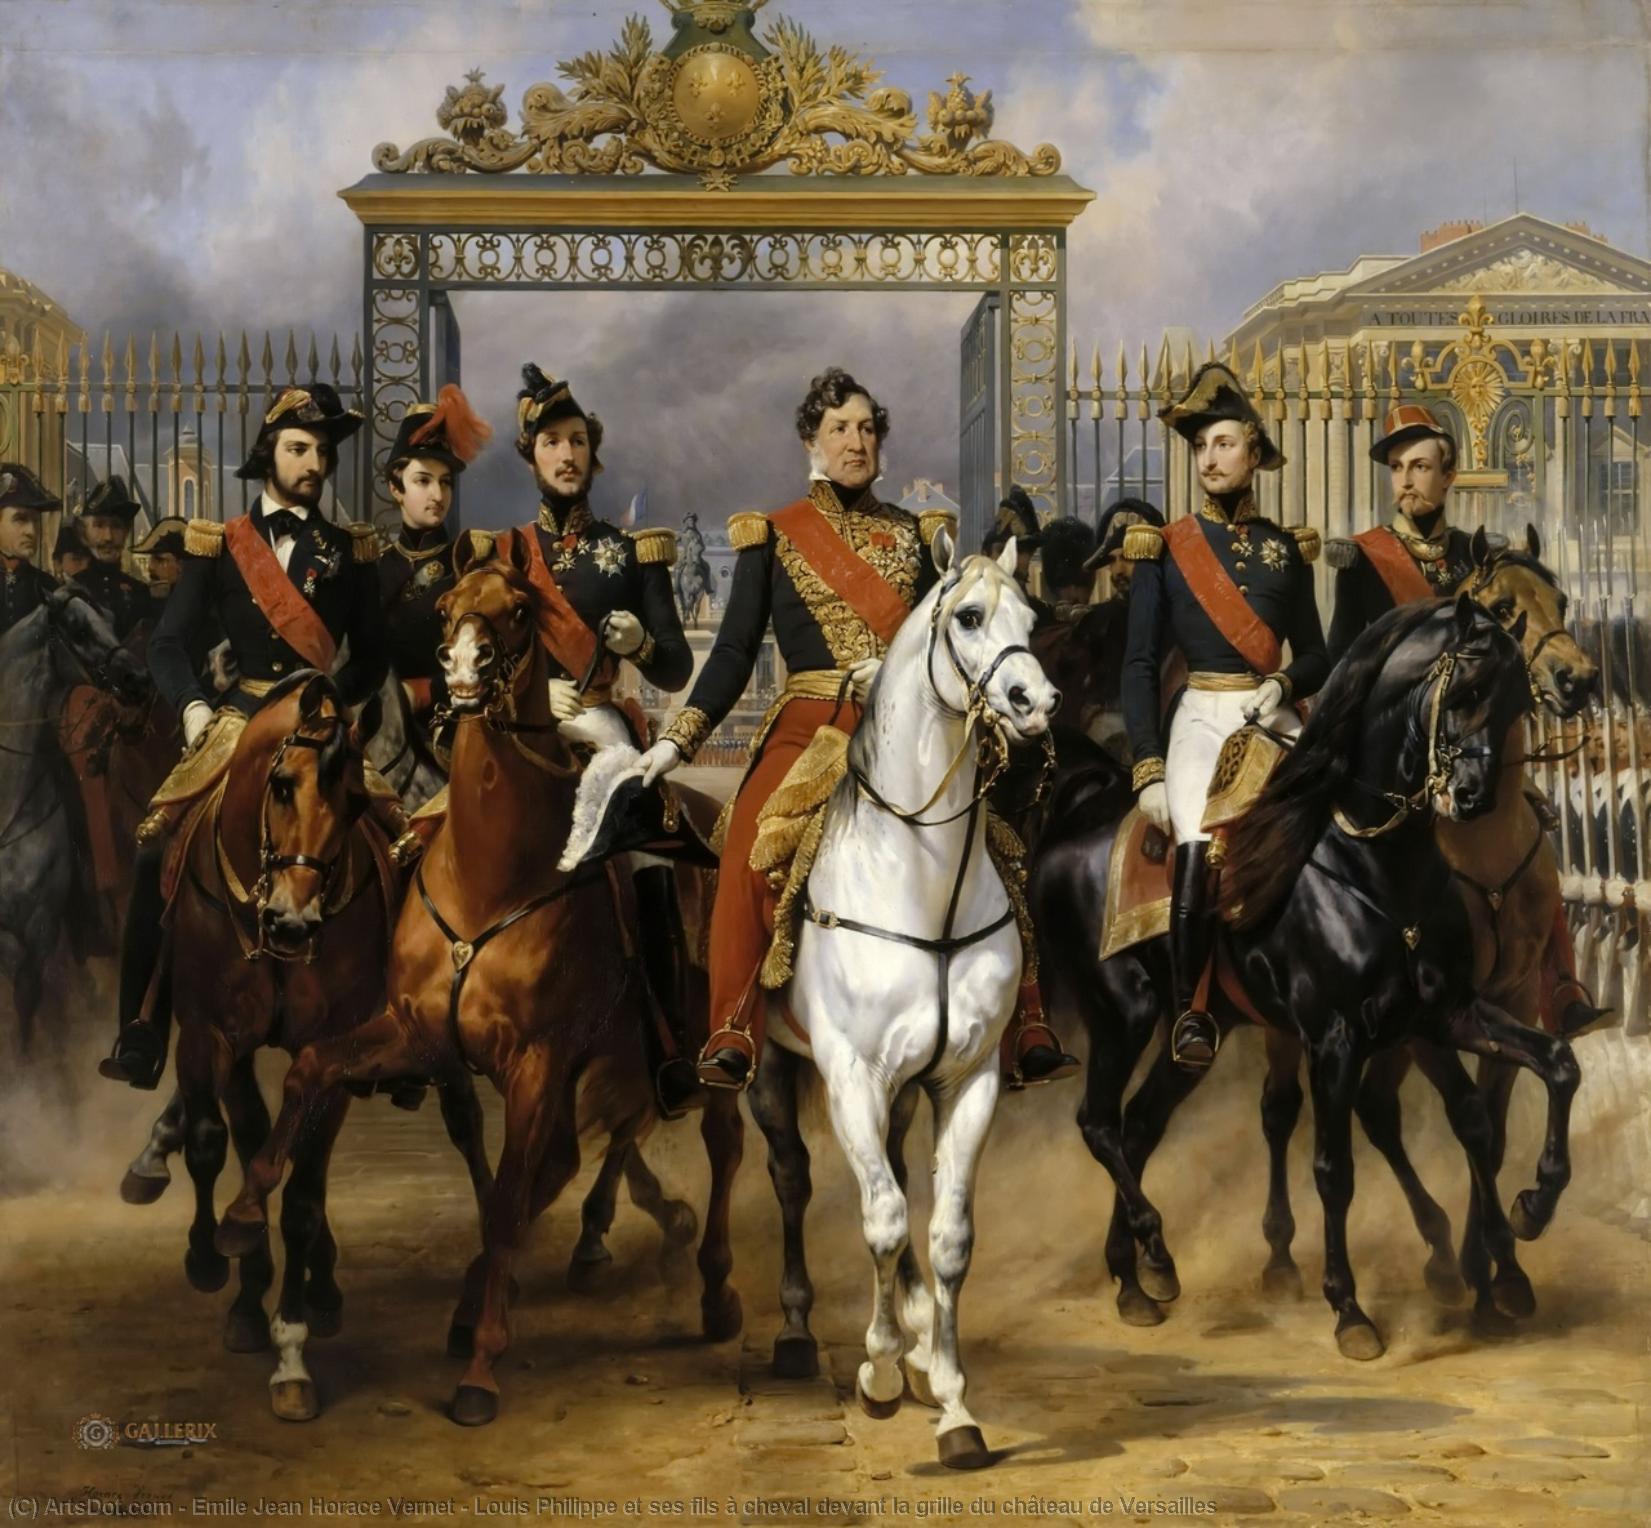 Order Paintings Reproductions Louis Philippe et ses fils à cheval devant la grille du château de Versailles by Emile Jean Horace Vernet (1789-1863) | ArtsDot.com